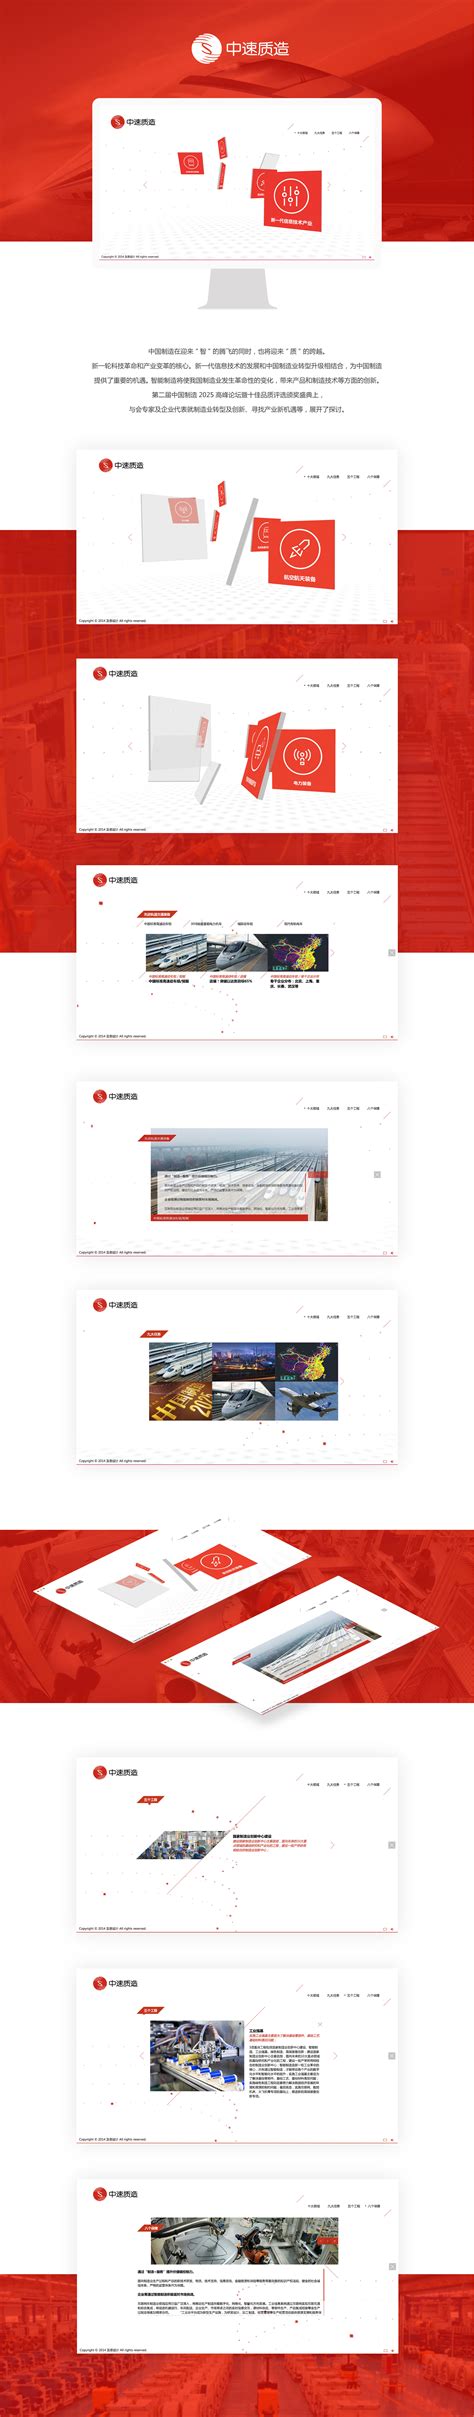 很经典的北京网站设计元素你知道吗？